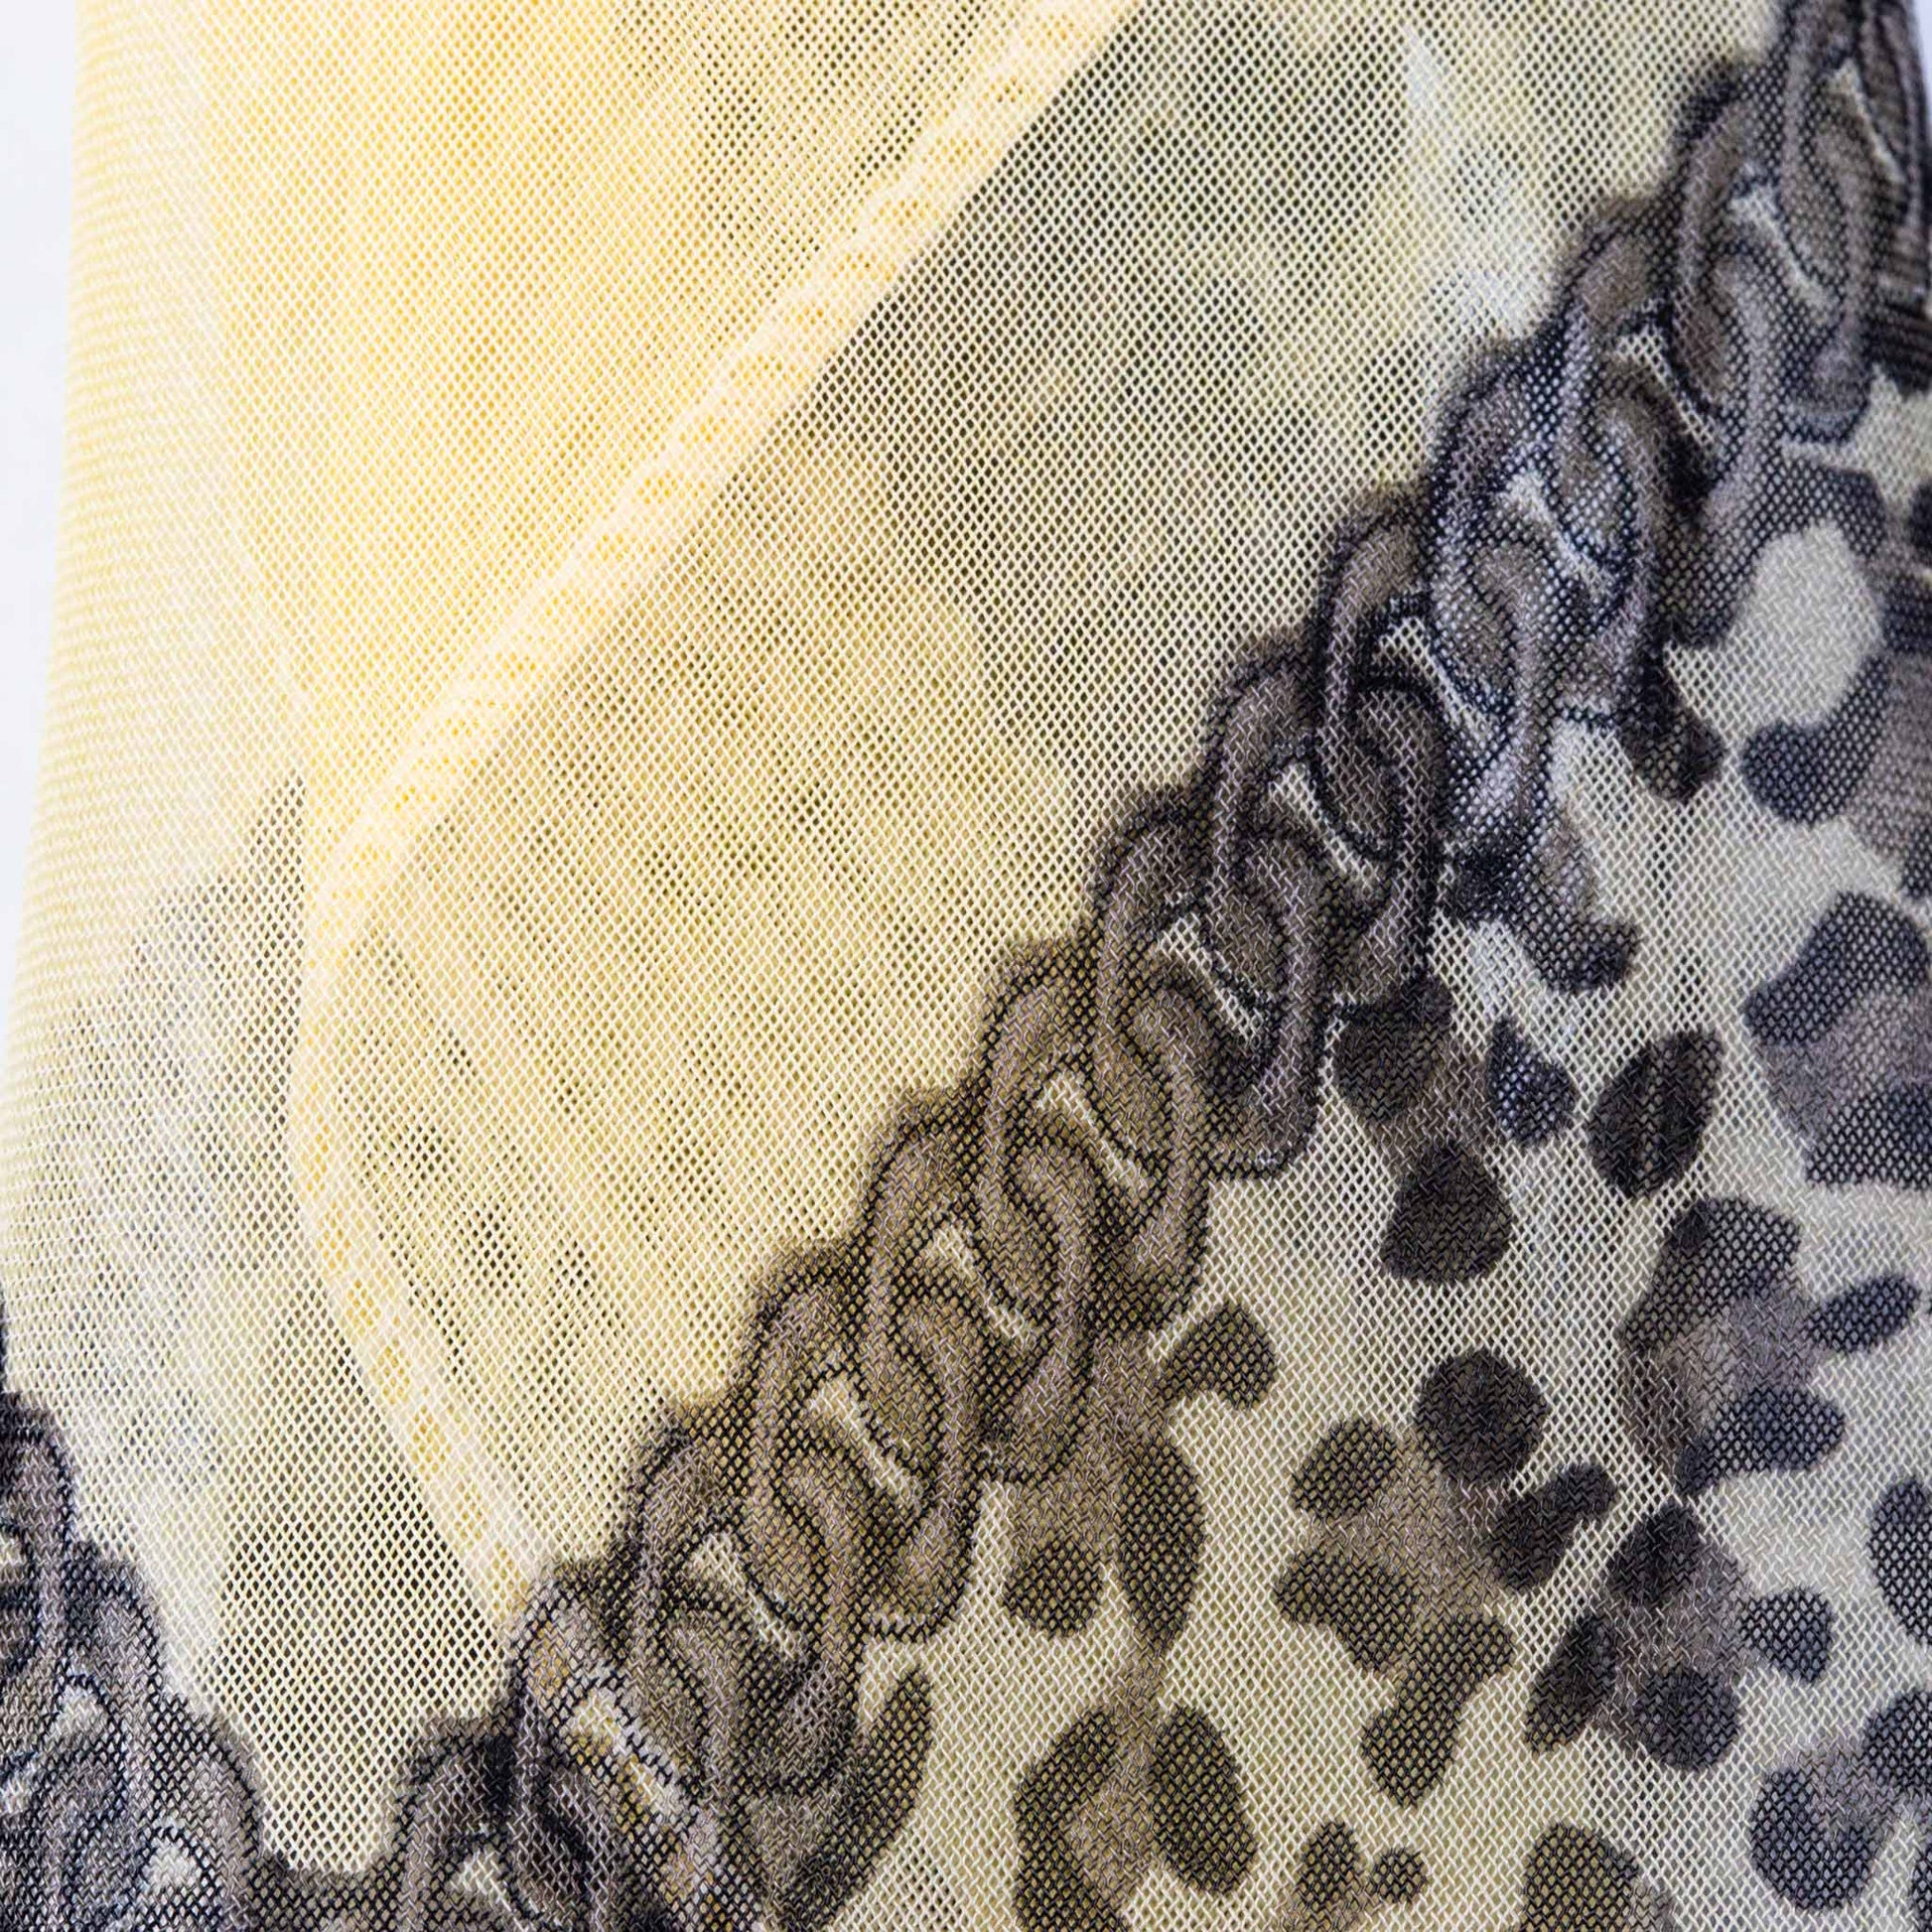 Eșarfă damă din mătase cu secțiuni animal print, 65 x 65 cm - Crem, Maro